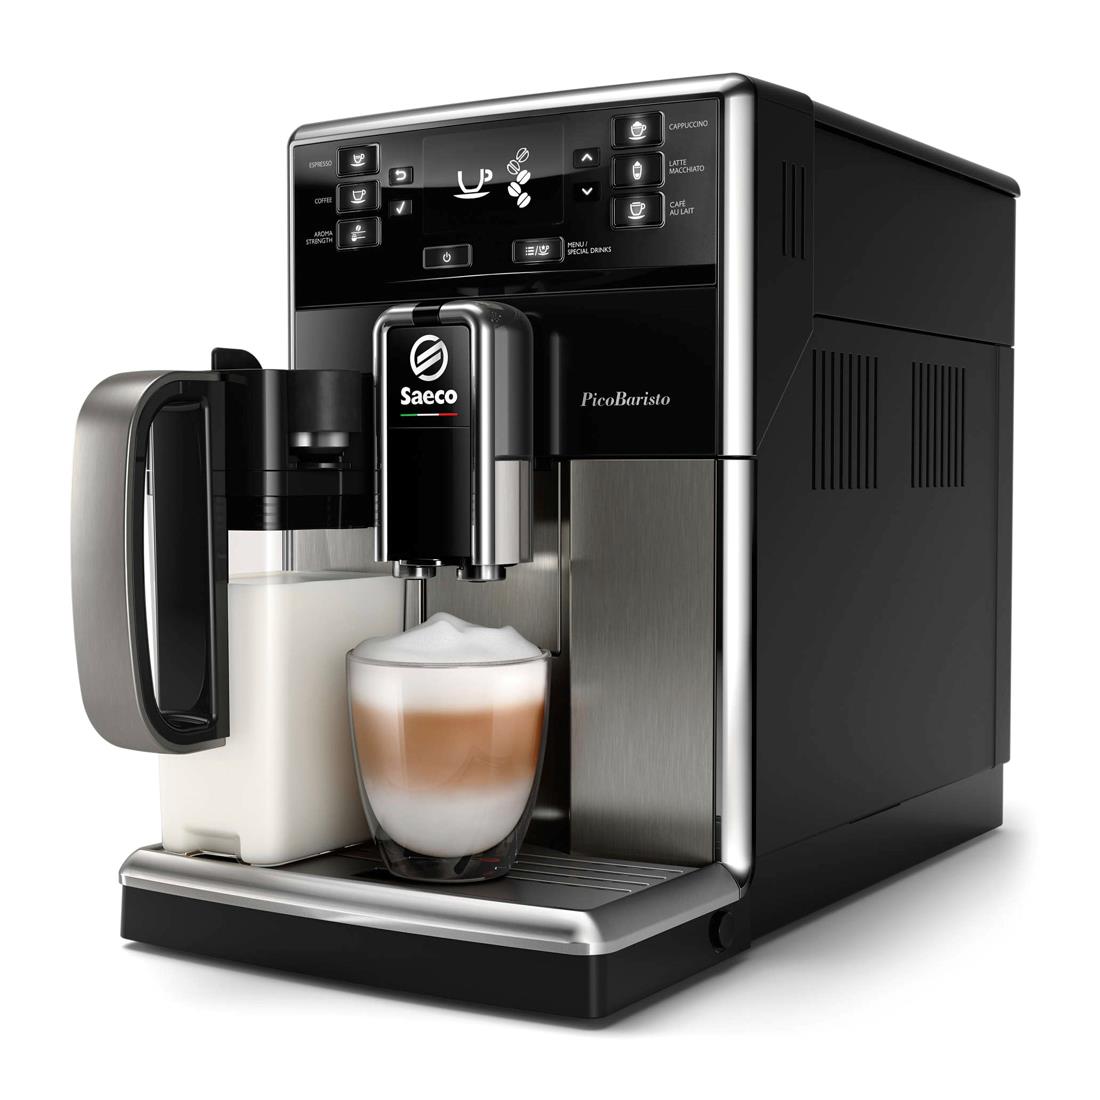 https://www.matacanaria.com/11620-thickbox_default/philips-saeco-sm-5479-cafetera-espresso-superautomatica.jpg